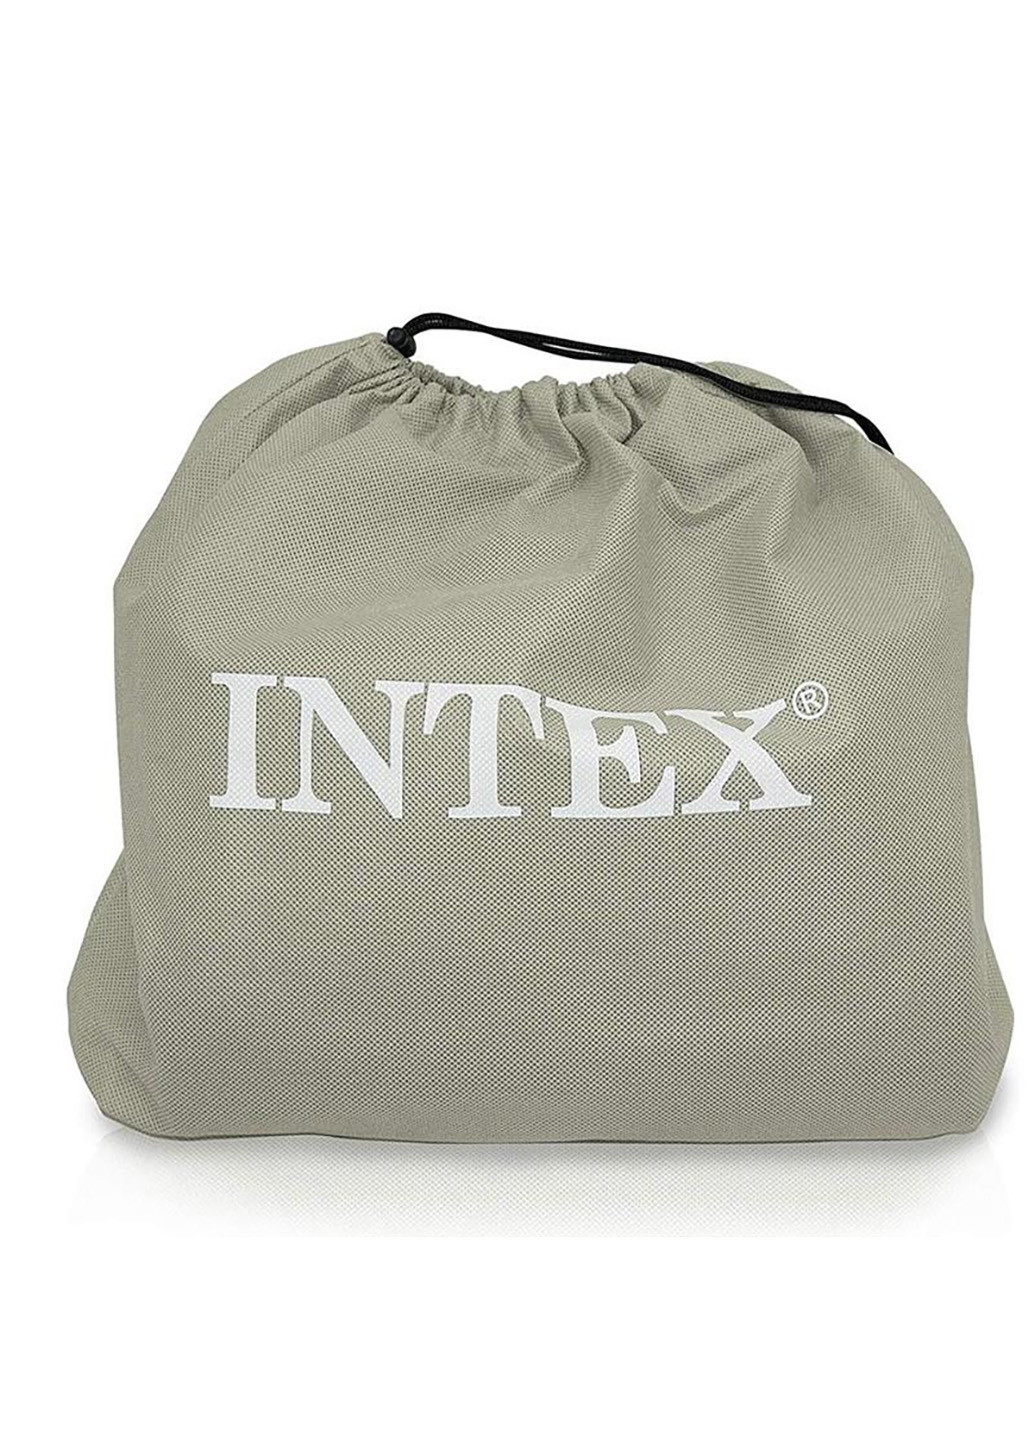 Надувной матрас Intex (219905425)